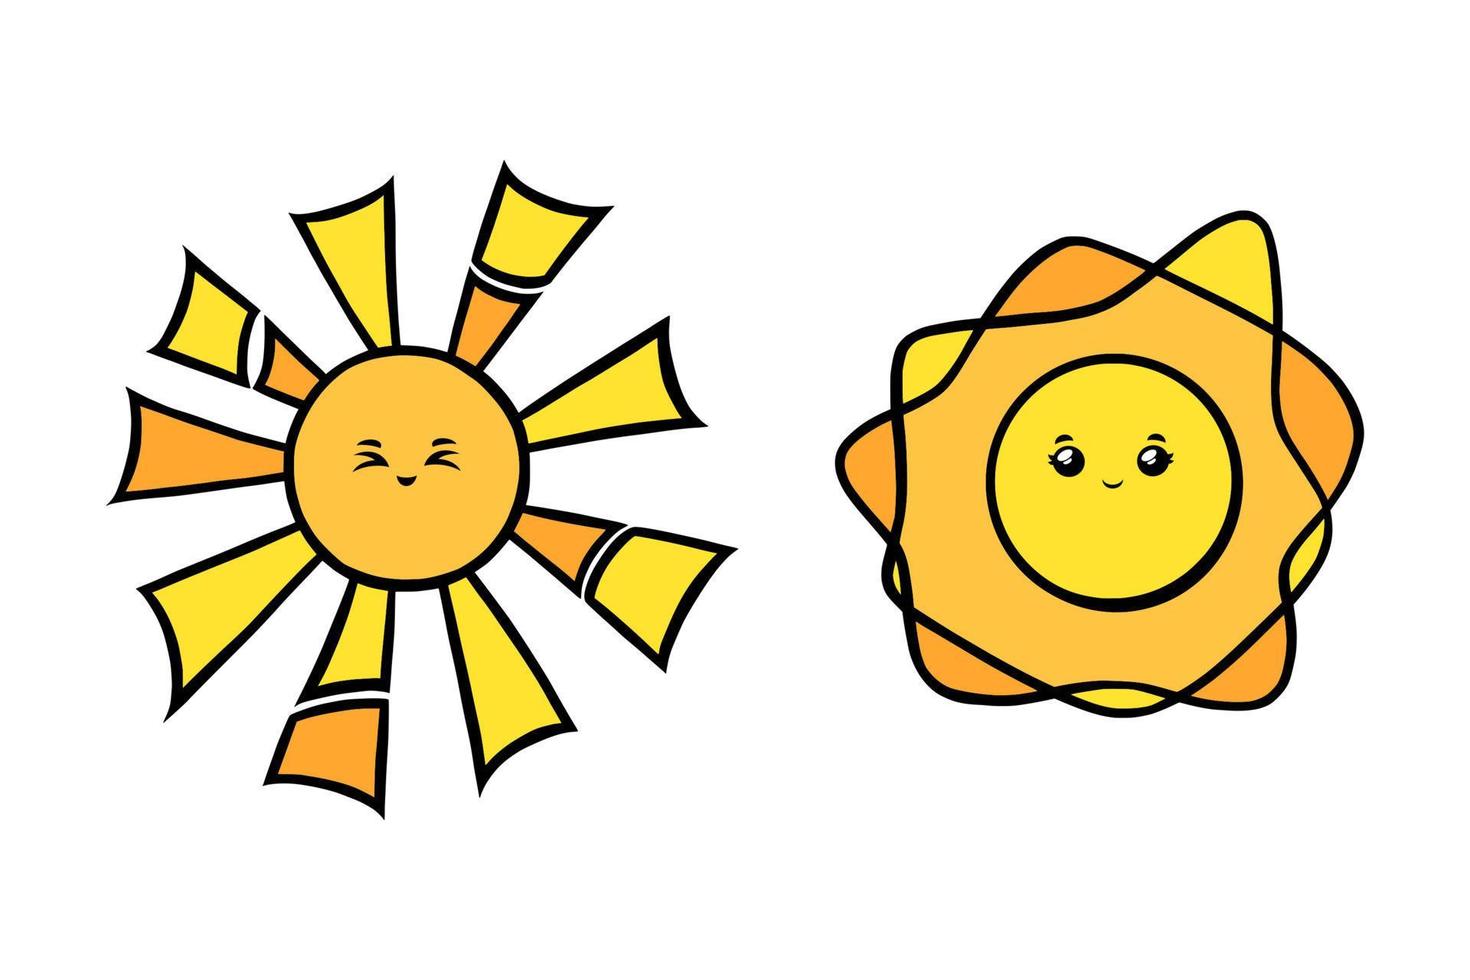 sóis fofos com olhos cheios de alegria. rostos sorridentes de sol amarelo no estilo doodle. ilustração vetorial preto e branco vetor